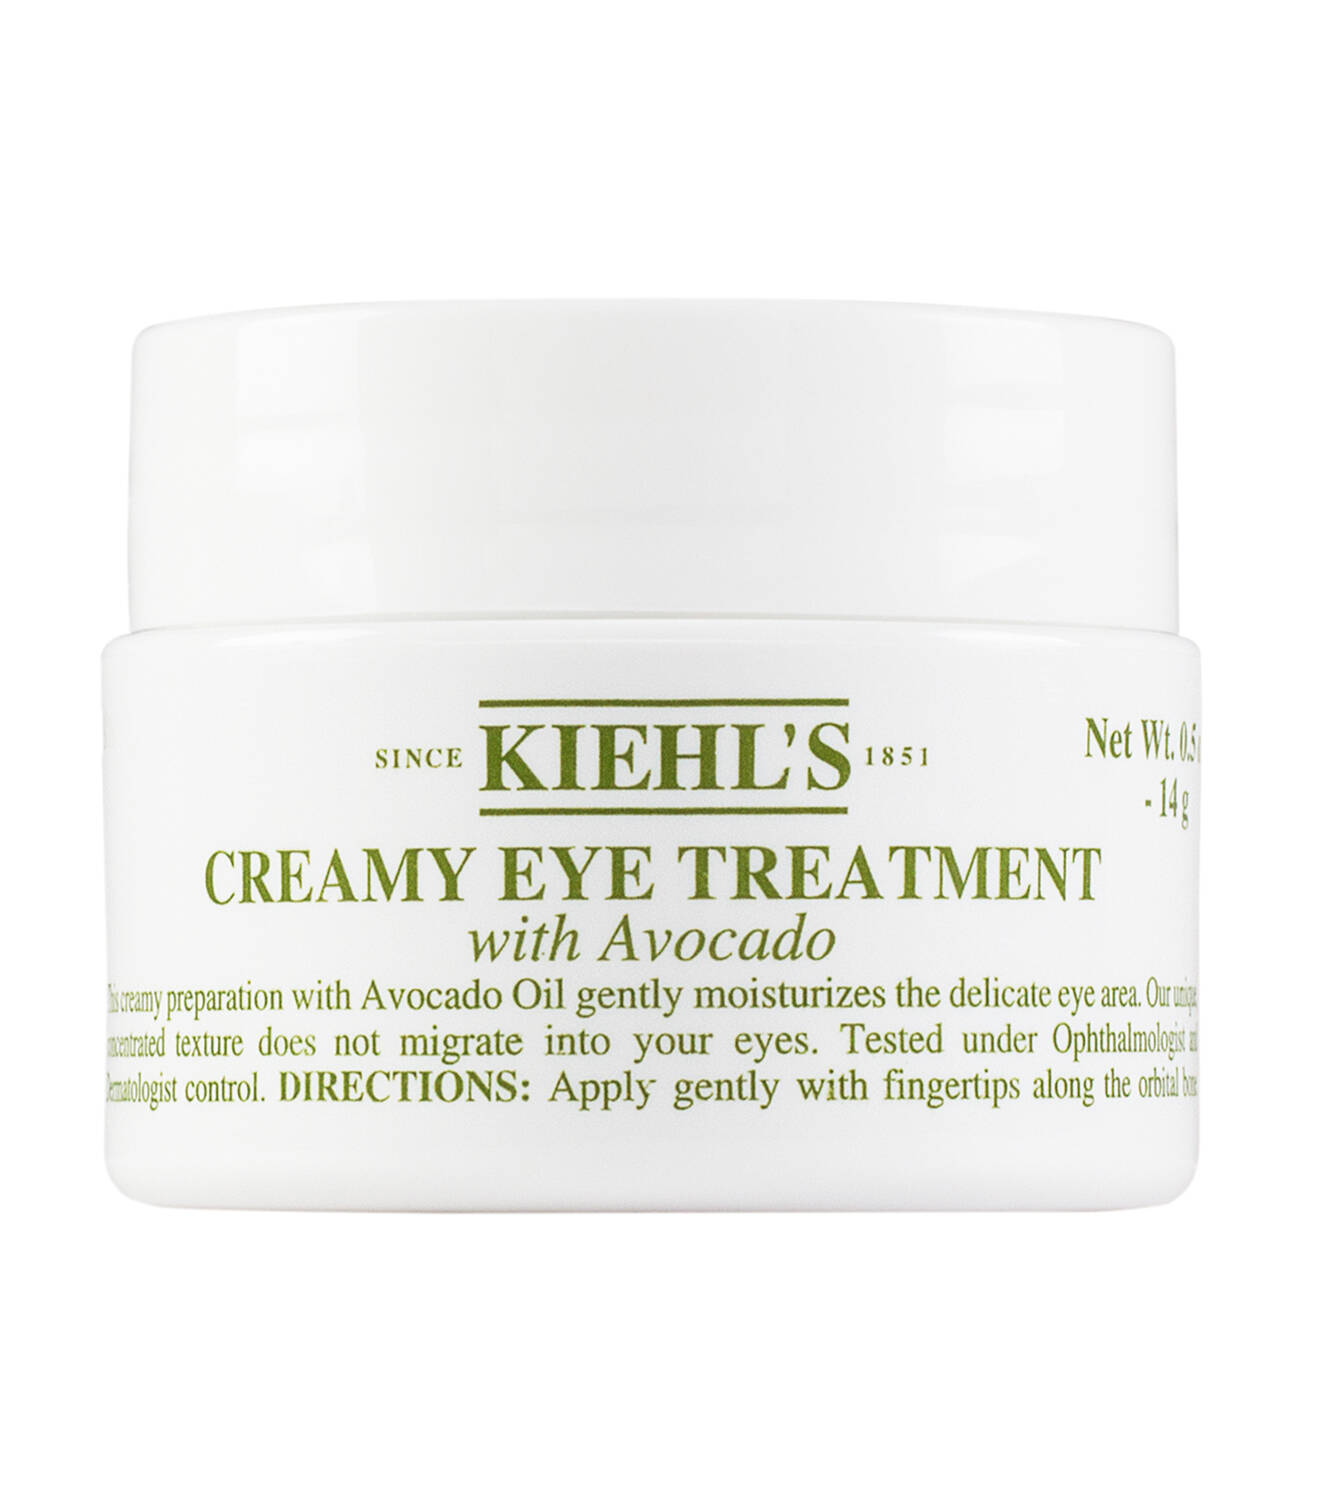 Kiehl’s Creamy Eye Treatment with Avocado  review in malaysia